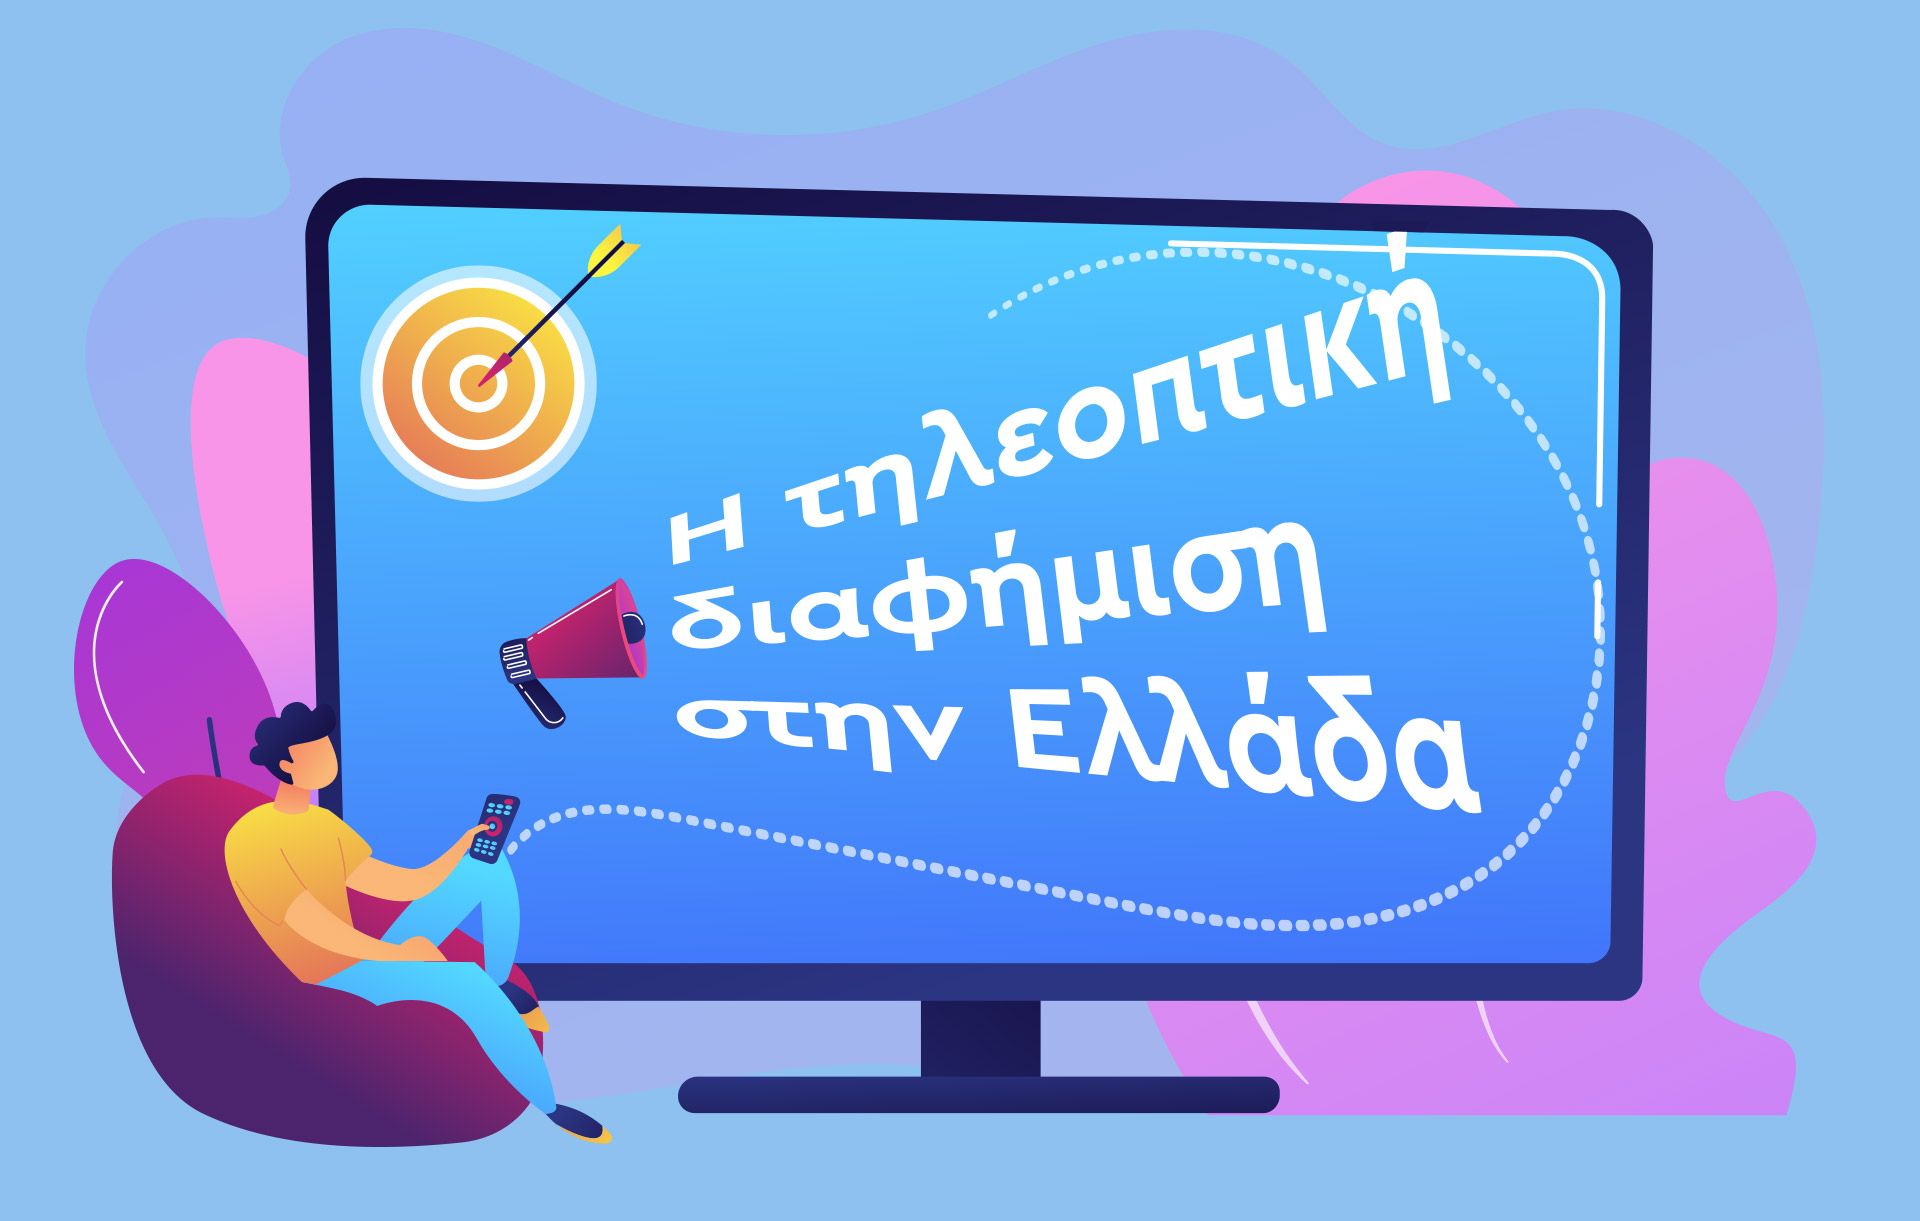 Οθόνη που γράφει "η τηλεοπτική διαφήμιση στην Ελλάδα"